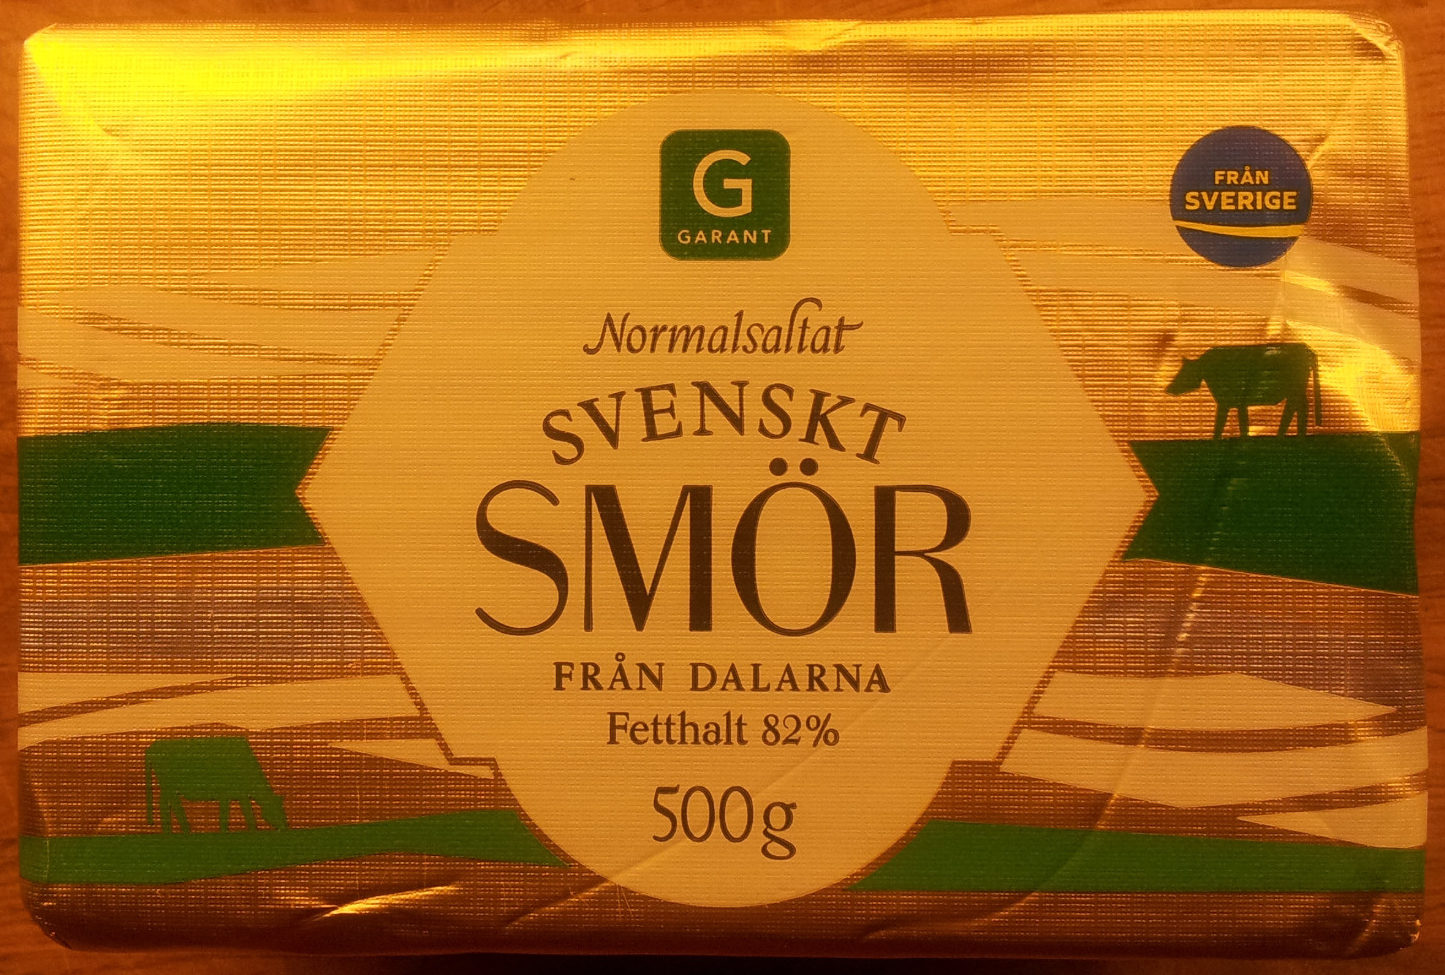 Garant Normalsaltat svenskt smör från Dalarna - Produit - sv